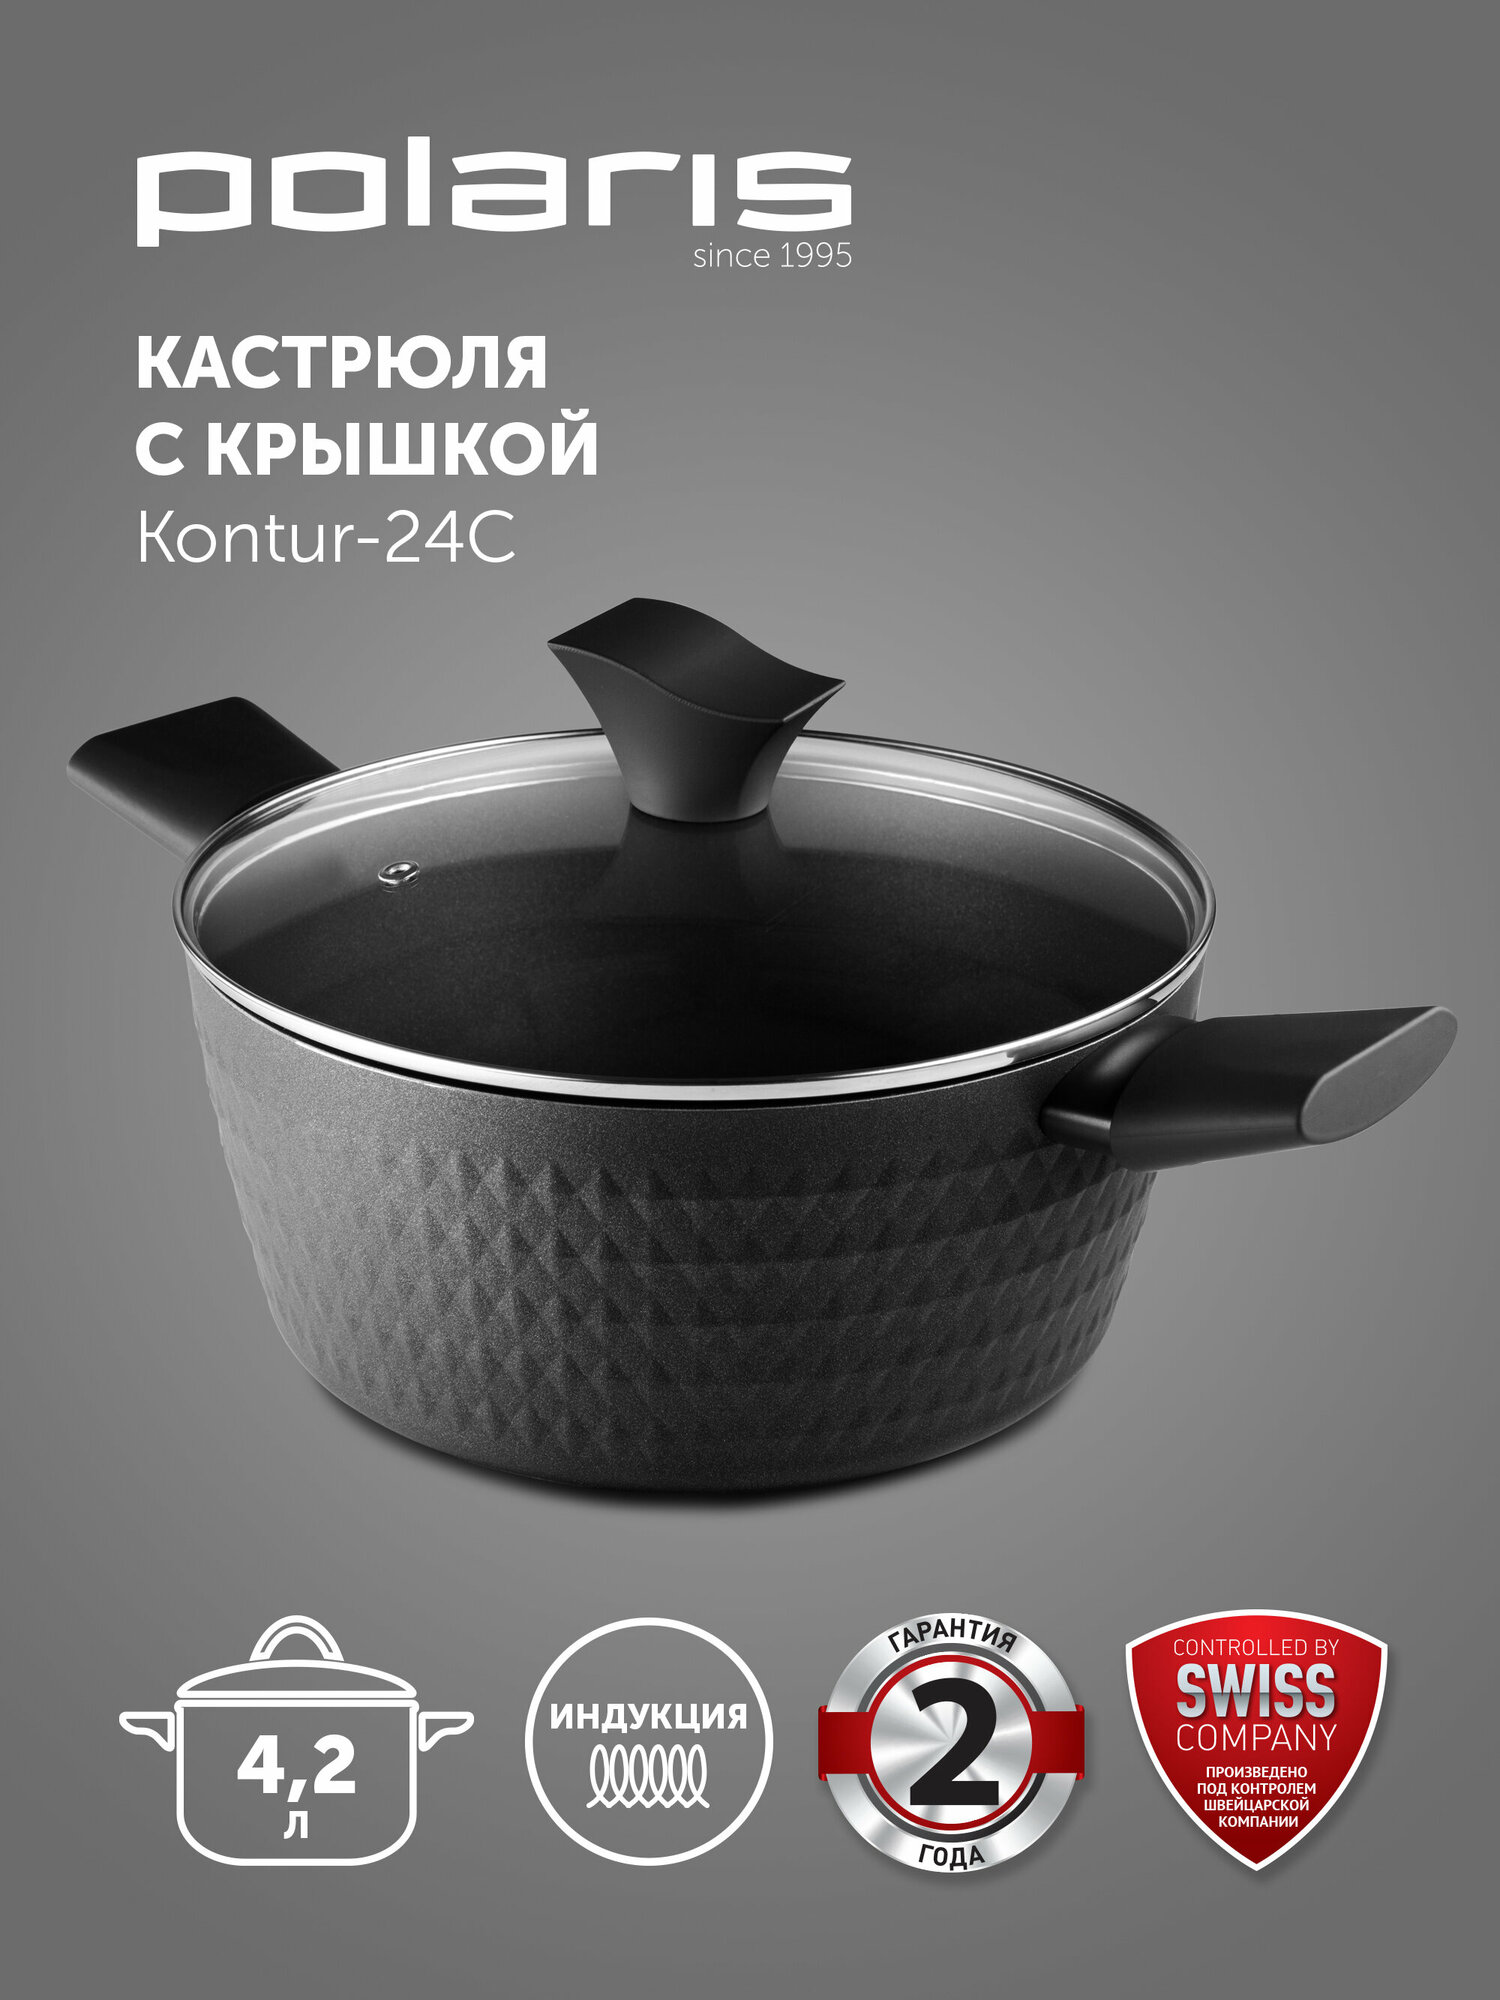 Кастрюля Kontur-24C ков.ал., 4,2 л (POLARIS)